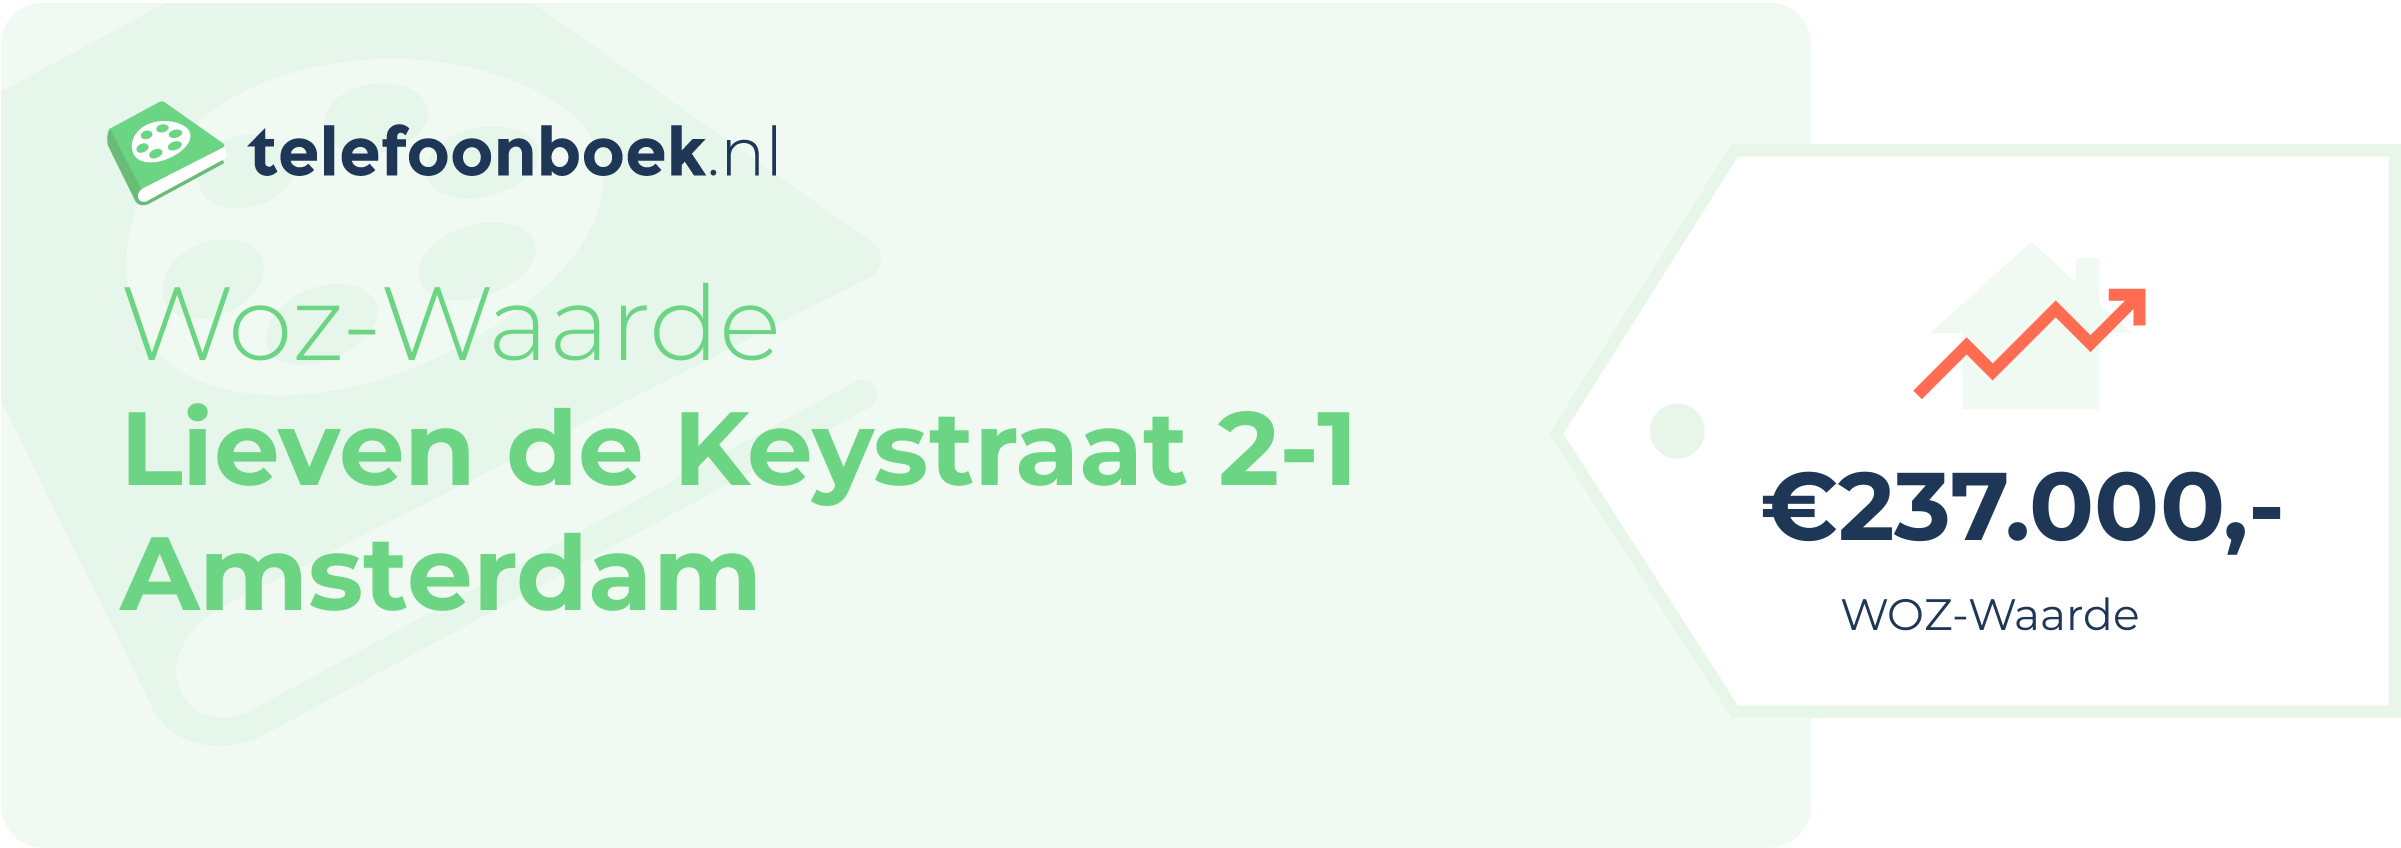 WOZ-waarde Lieven De Keystraat 2-1 Amsterdam